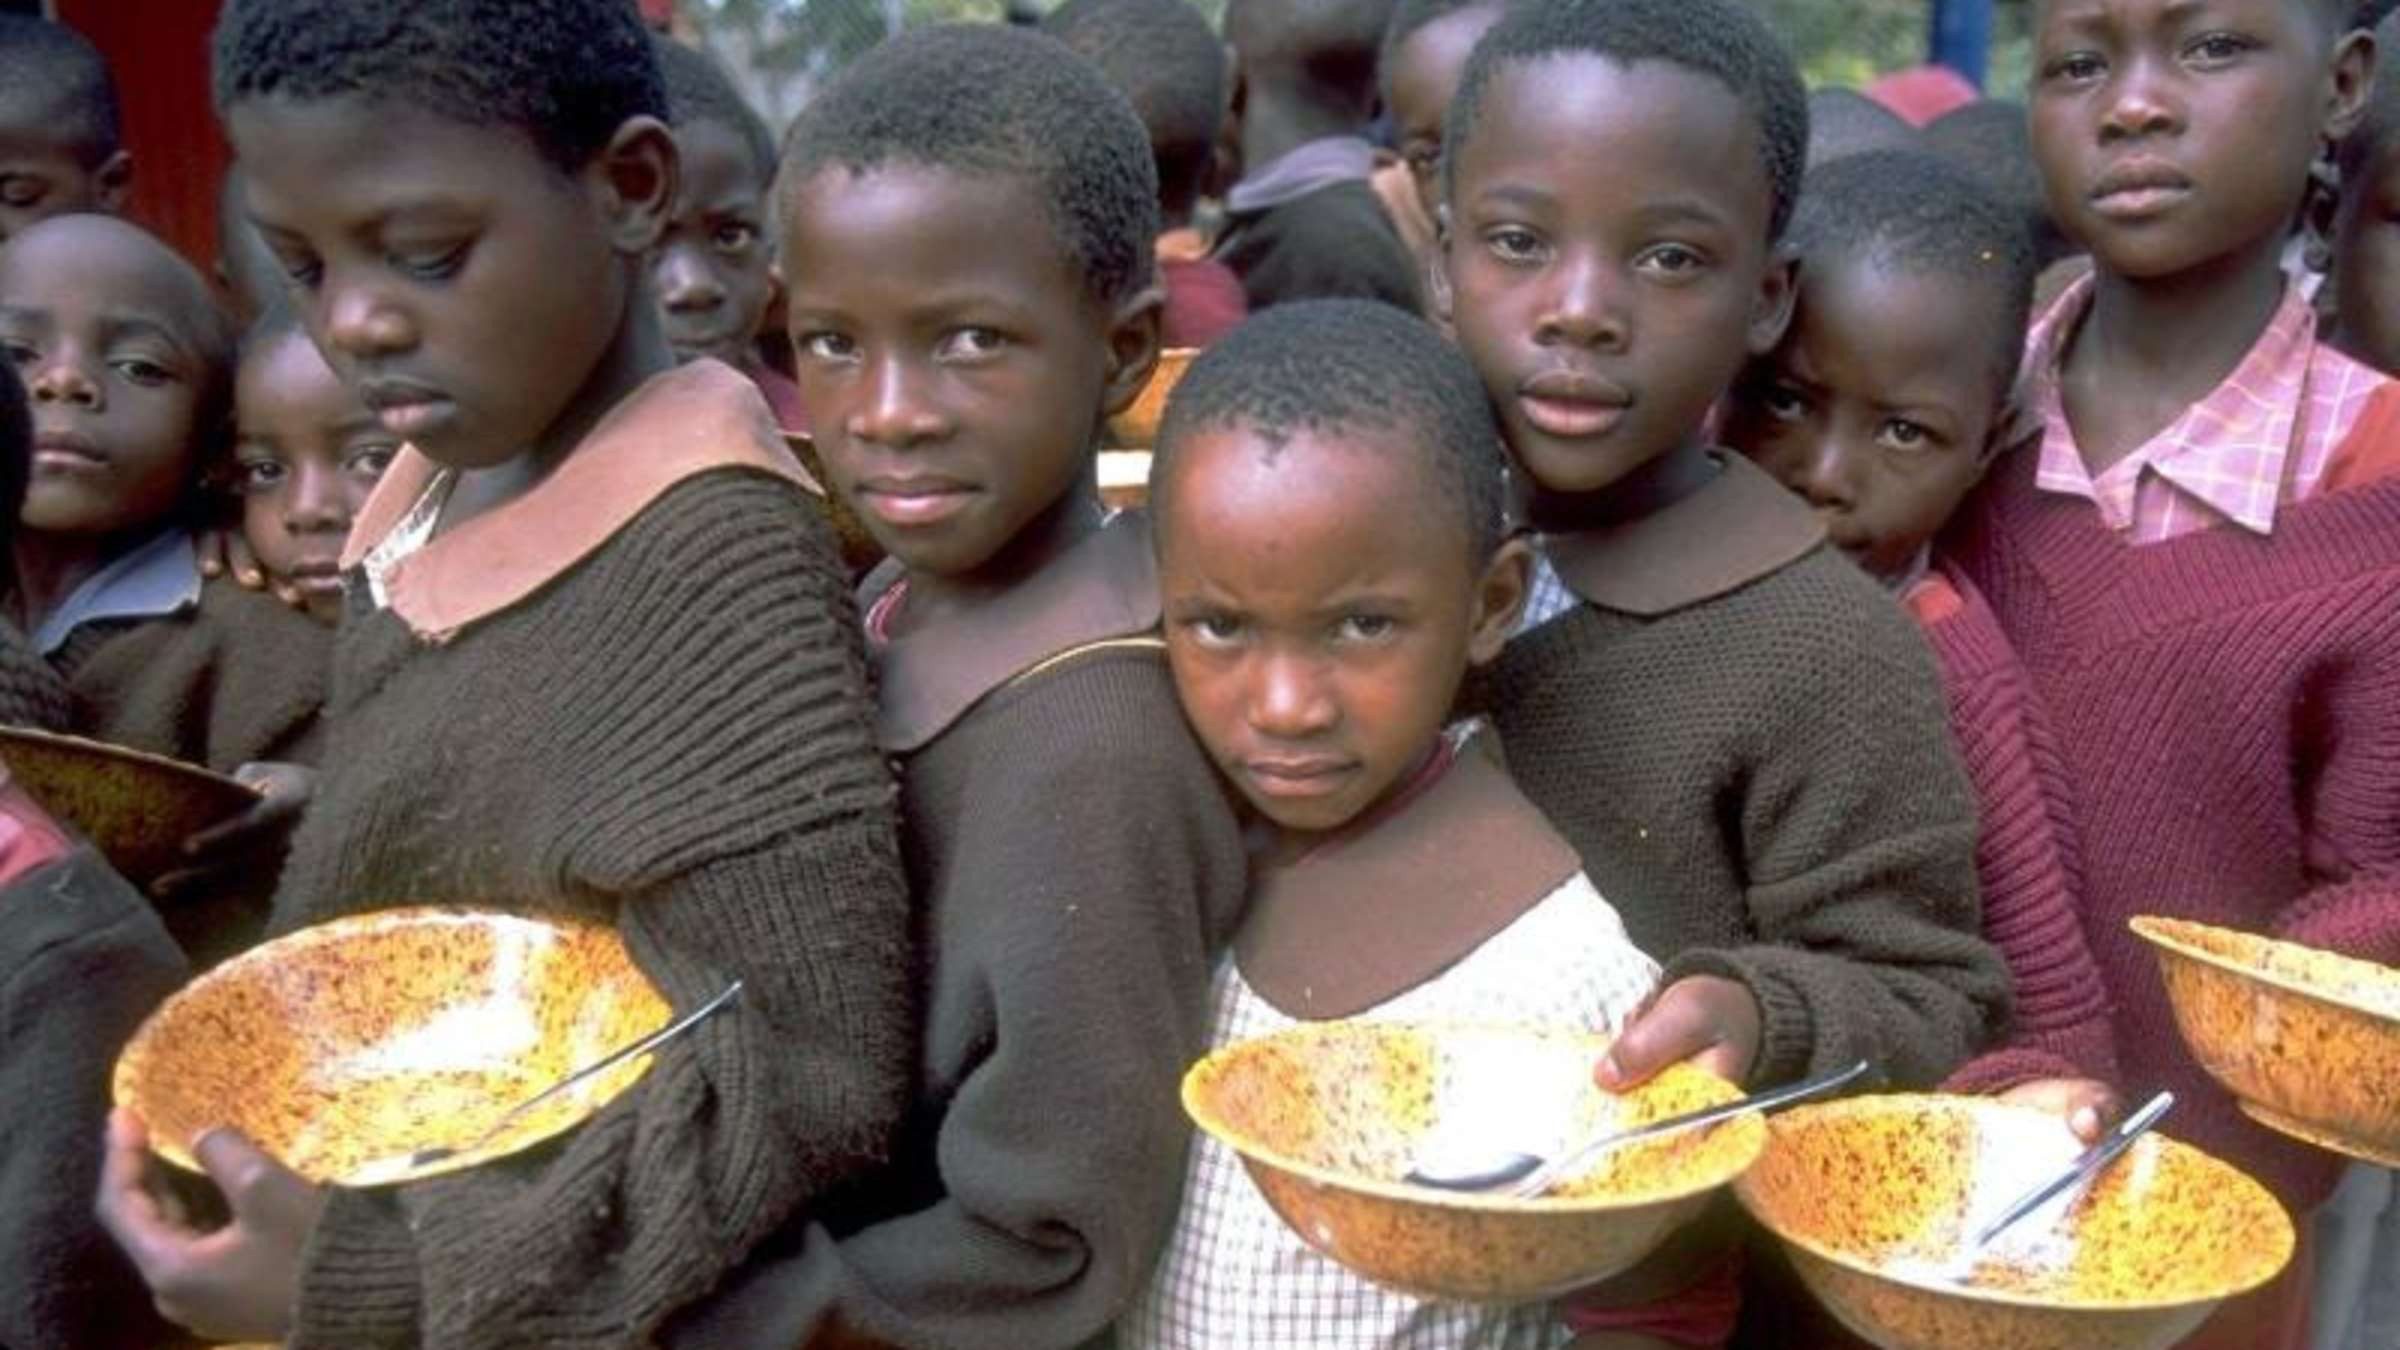 Starving help. Голодающыые дети Африке. Голодпющие дети в африкк.